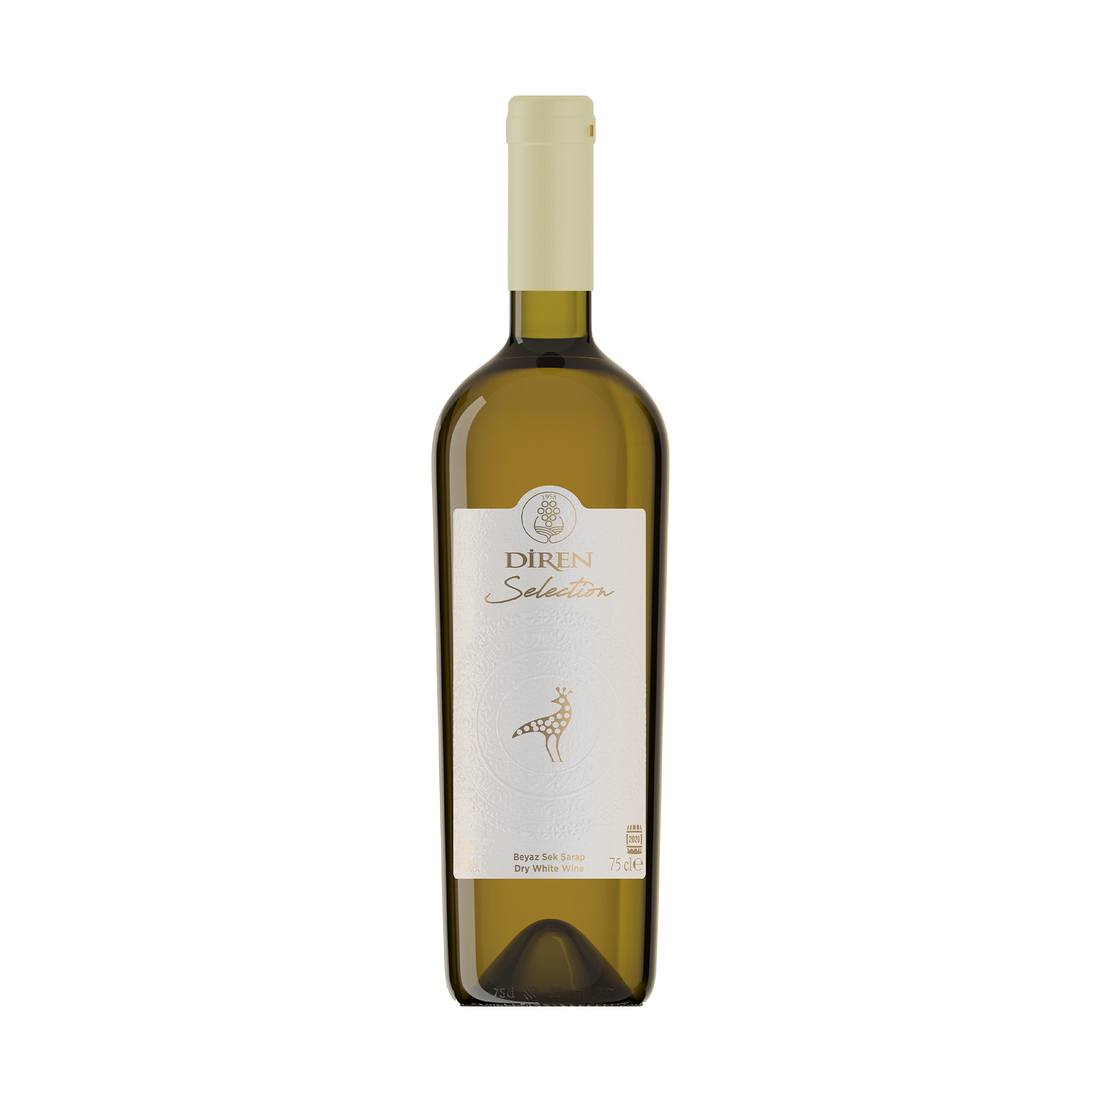 ディレン セレクション・ホワイト 750ml 辛口 トルコ 白ワイン | Diren Selection Beyaz Sek Sarap | Dry White Wine